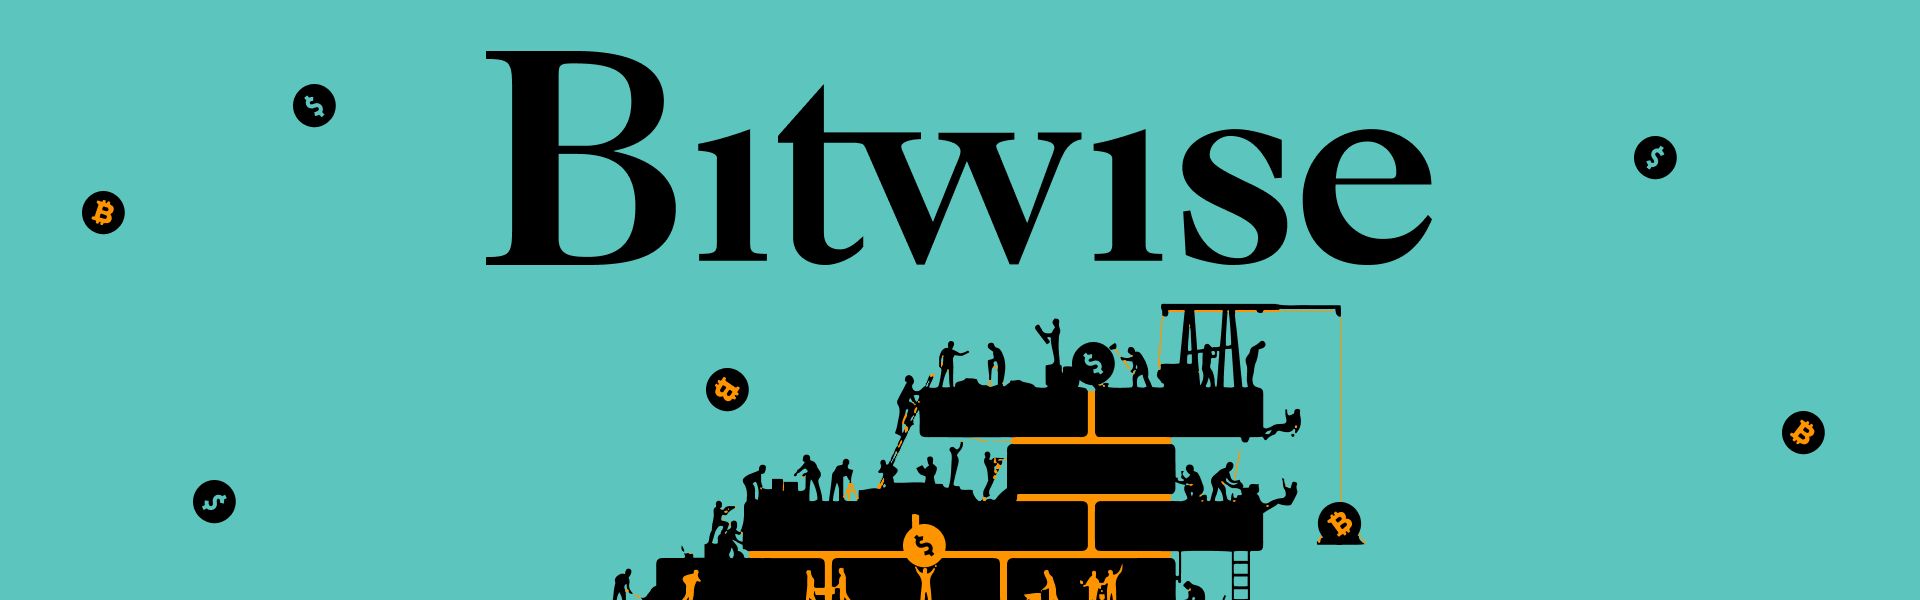 Bitwise віддасть частину прибутку від ETF Біткоїн-розробникам